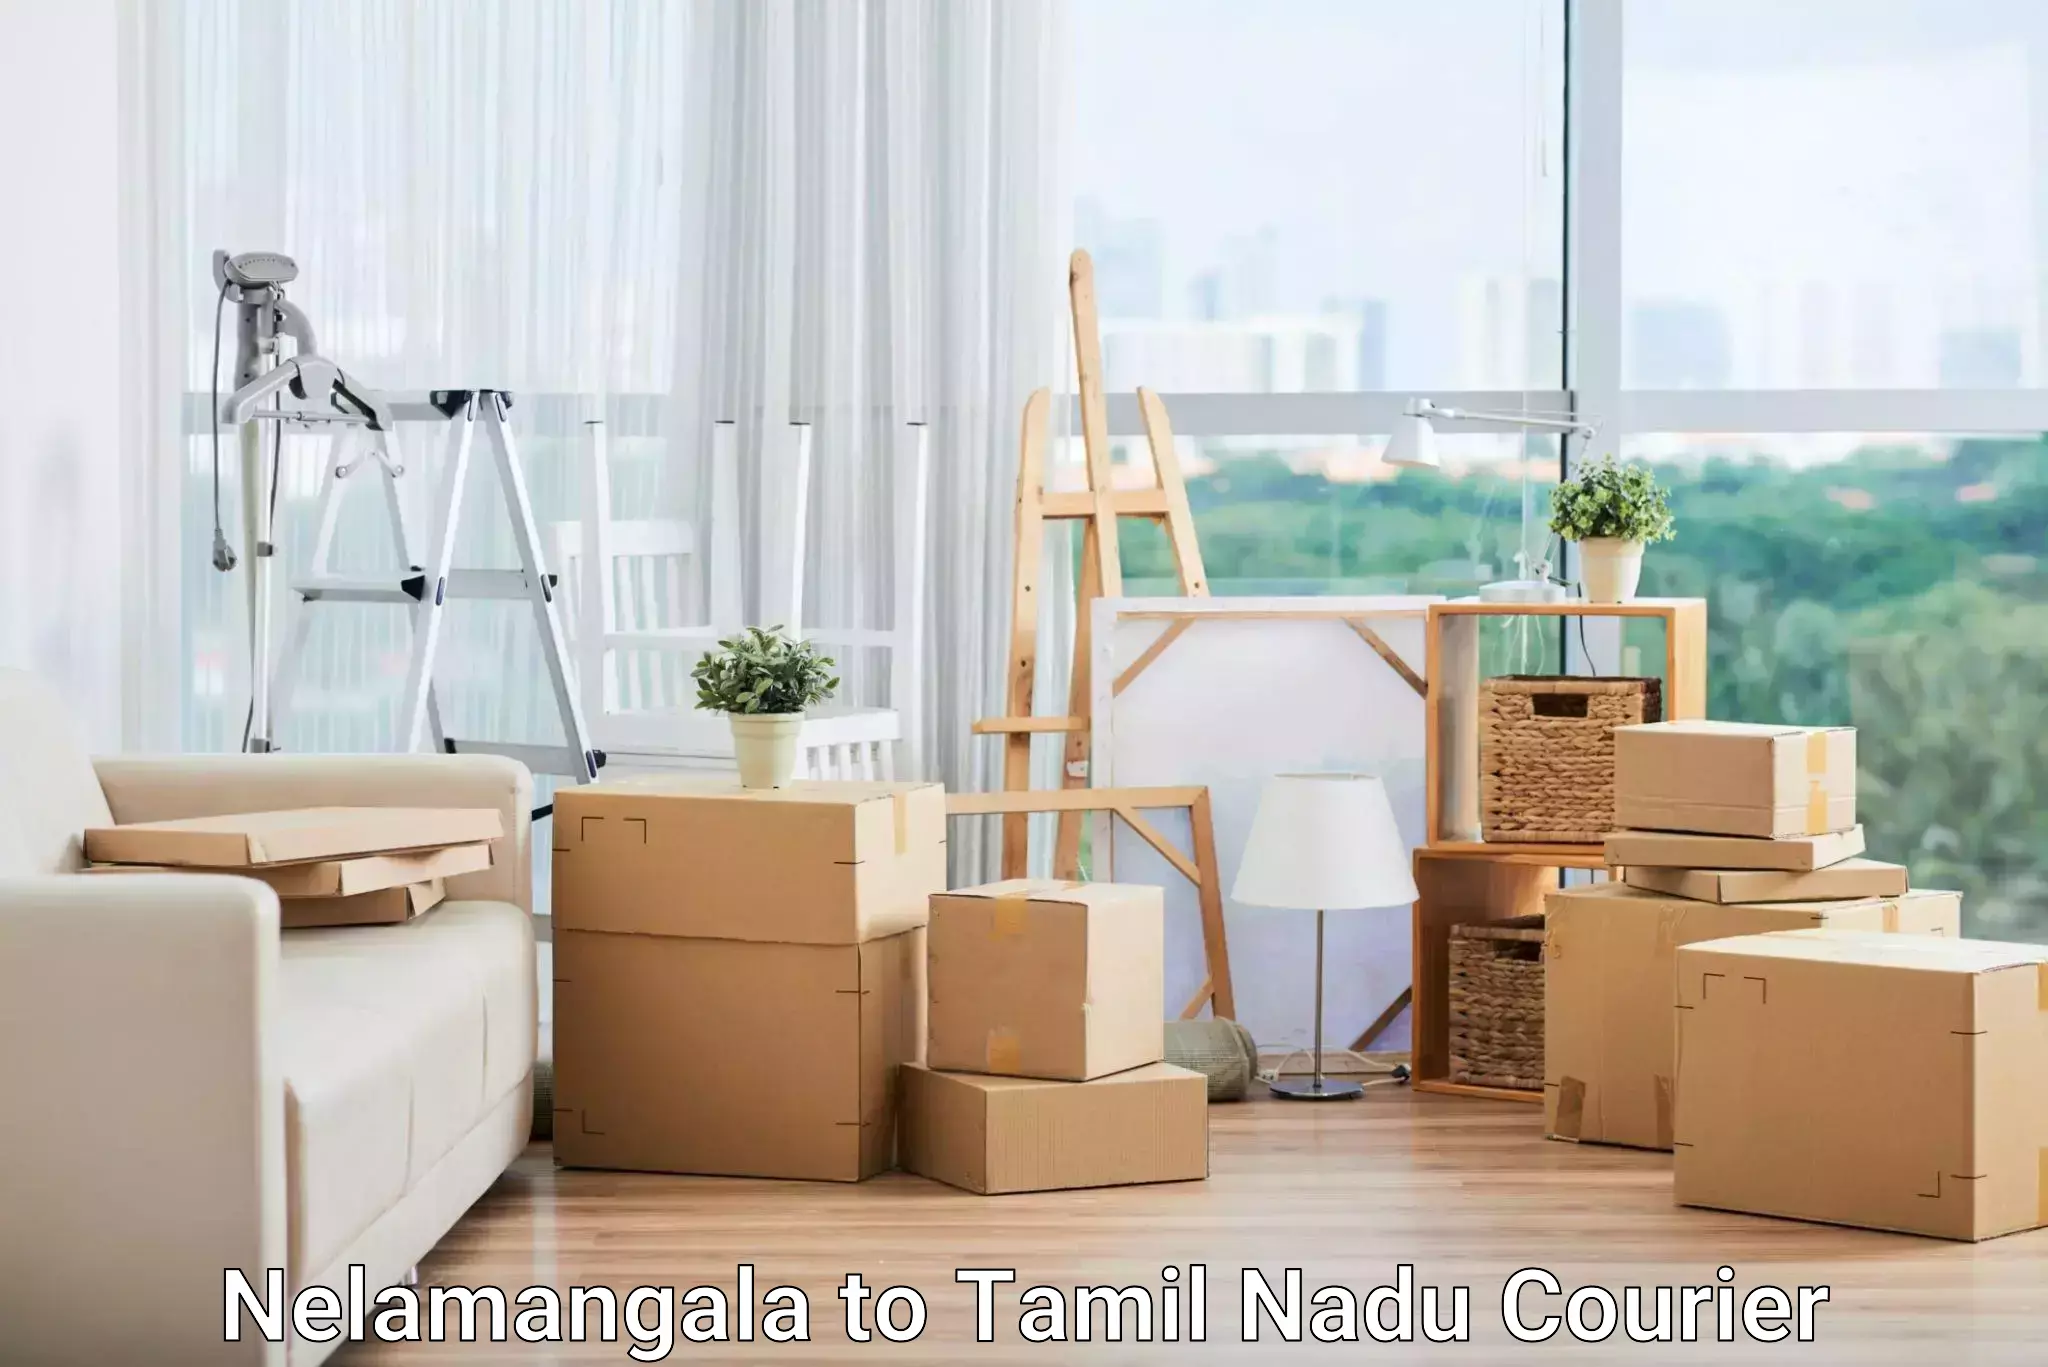 Delivery service partnership Nelamangala to Chennai Port